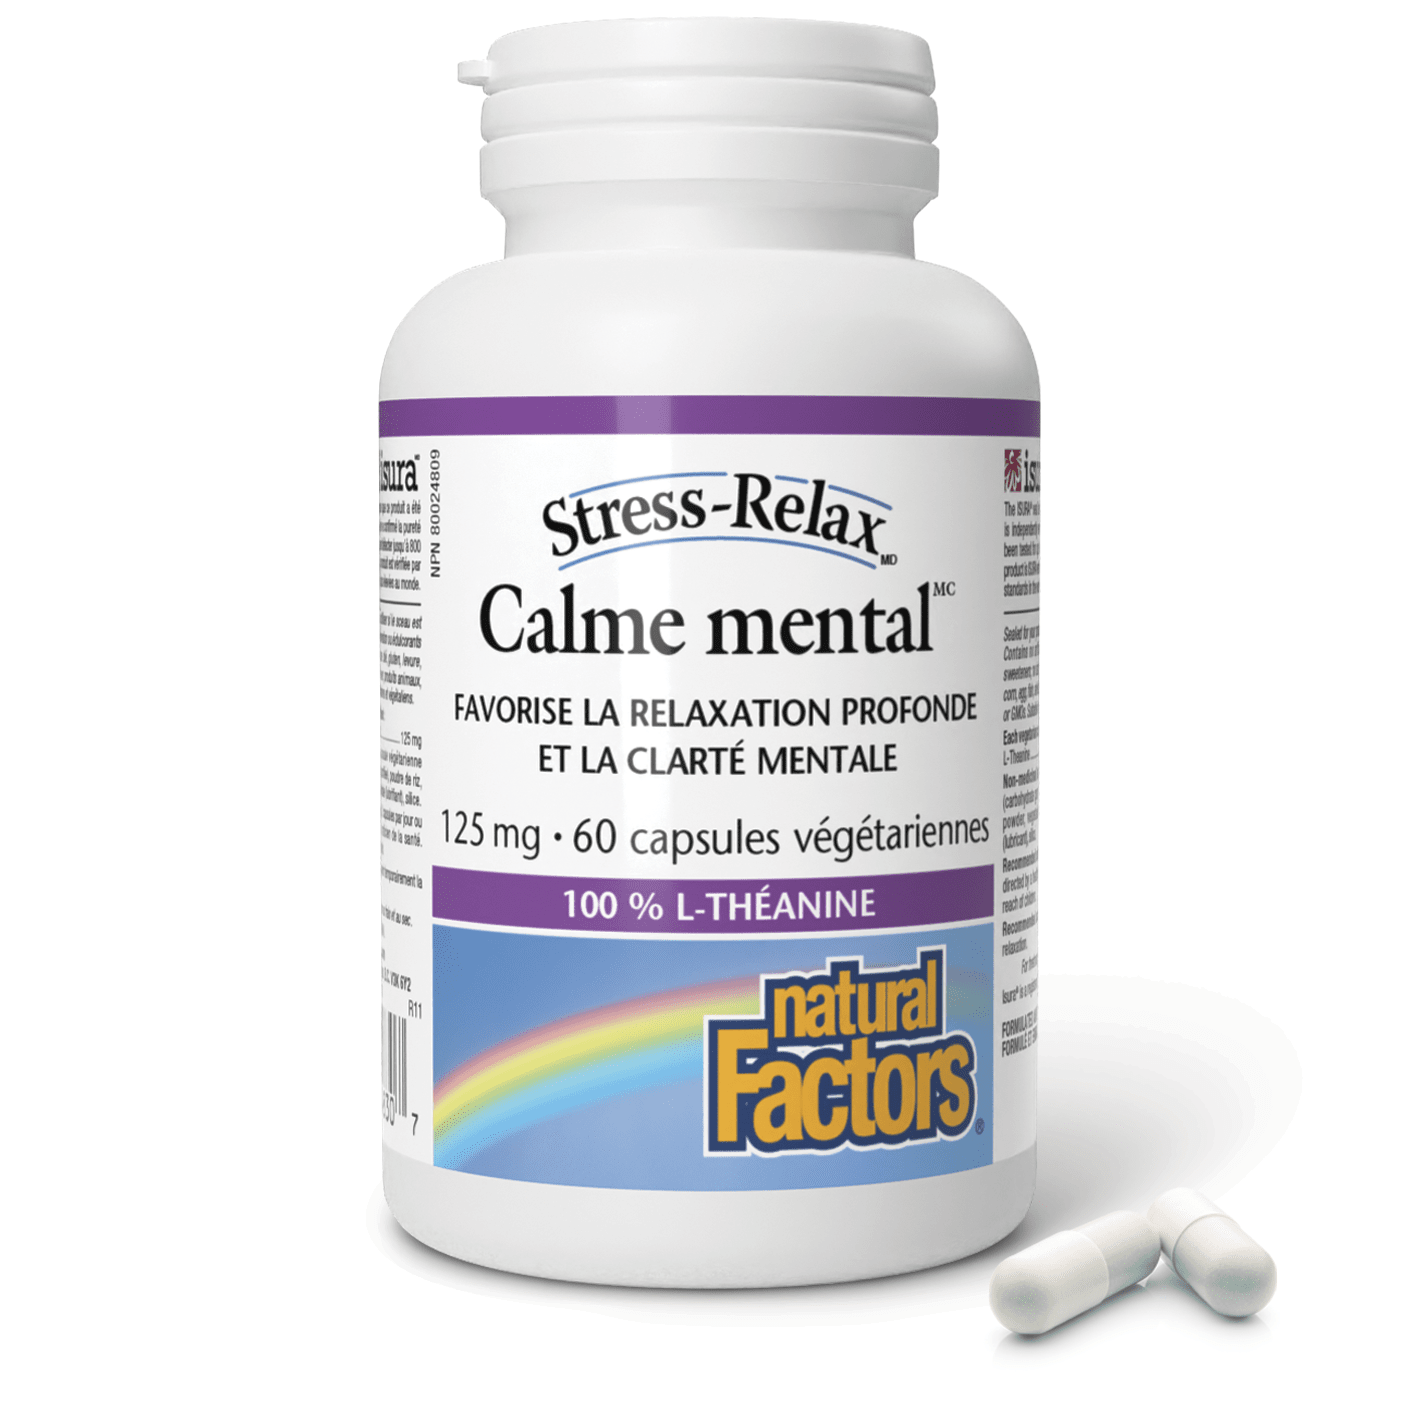 Calme mental 125 mg, Stress-Relax, Natural Factors|v|image|4830